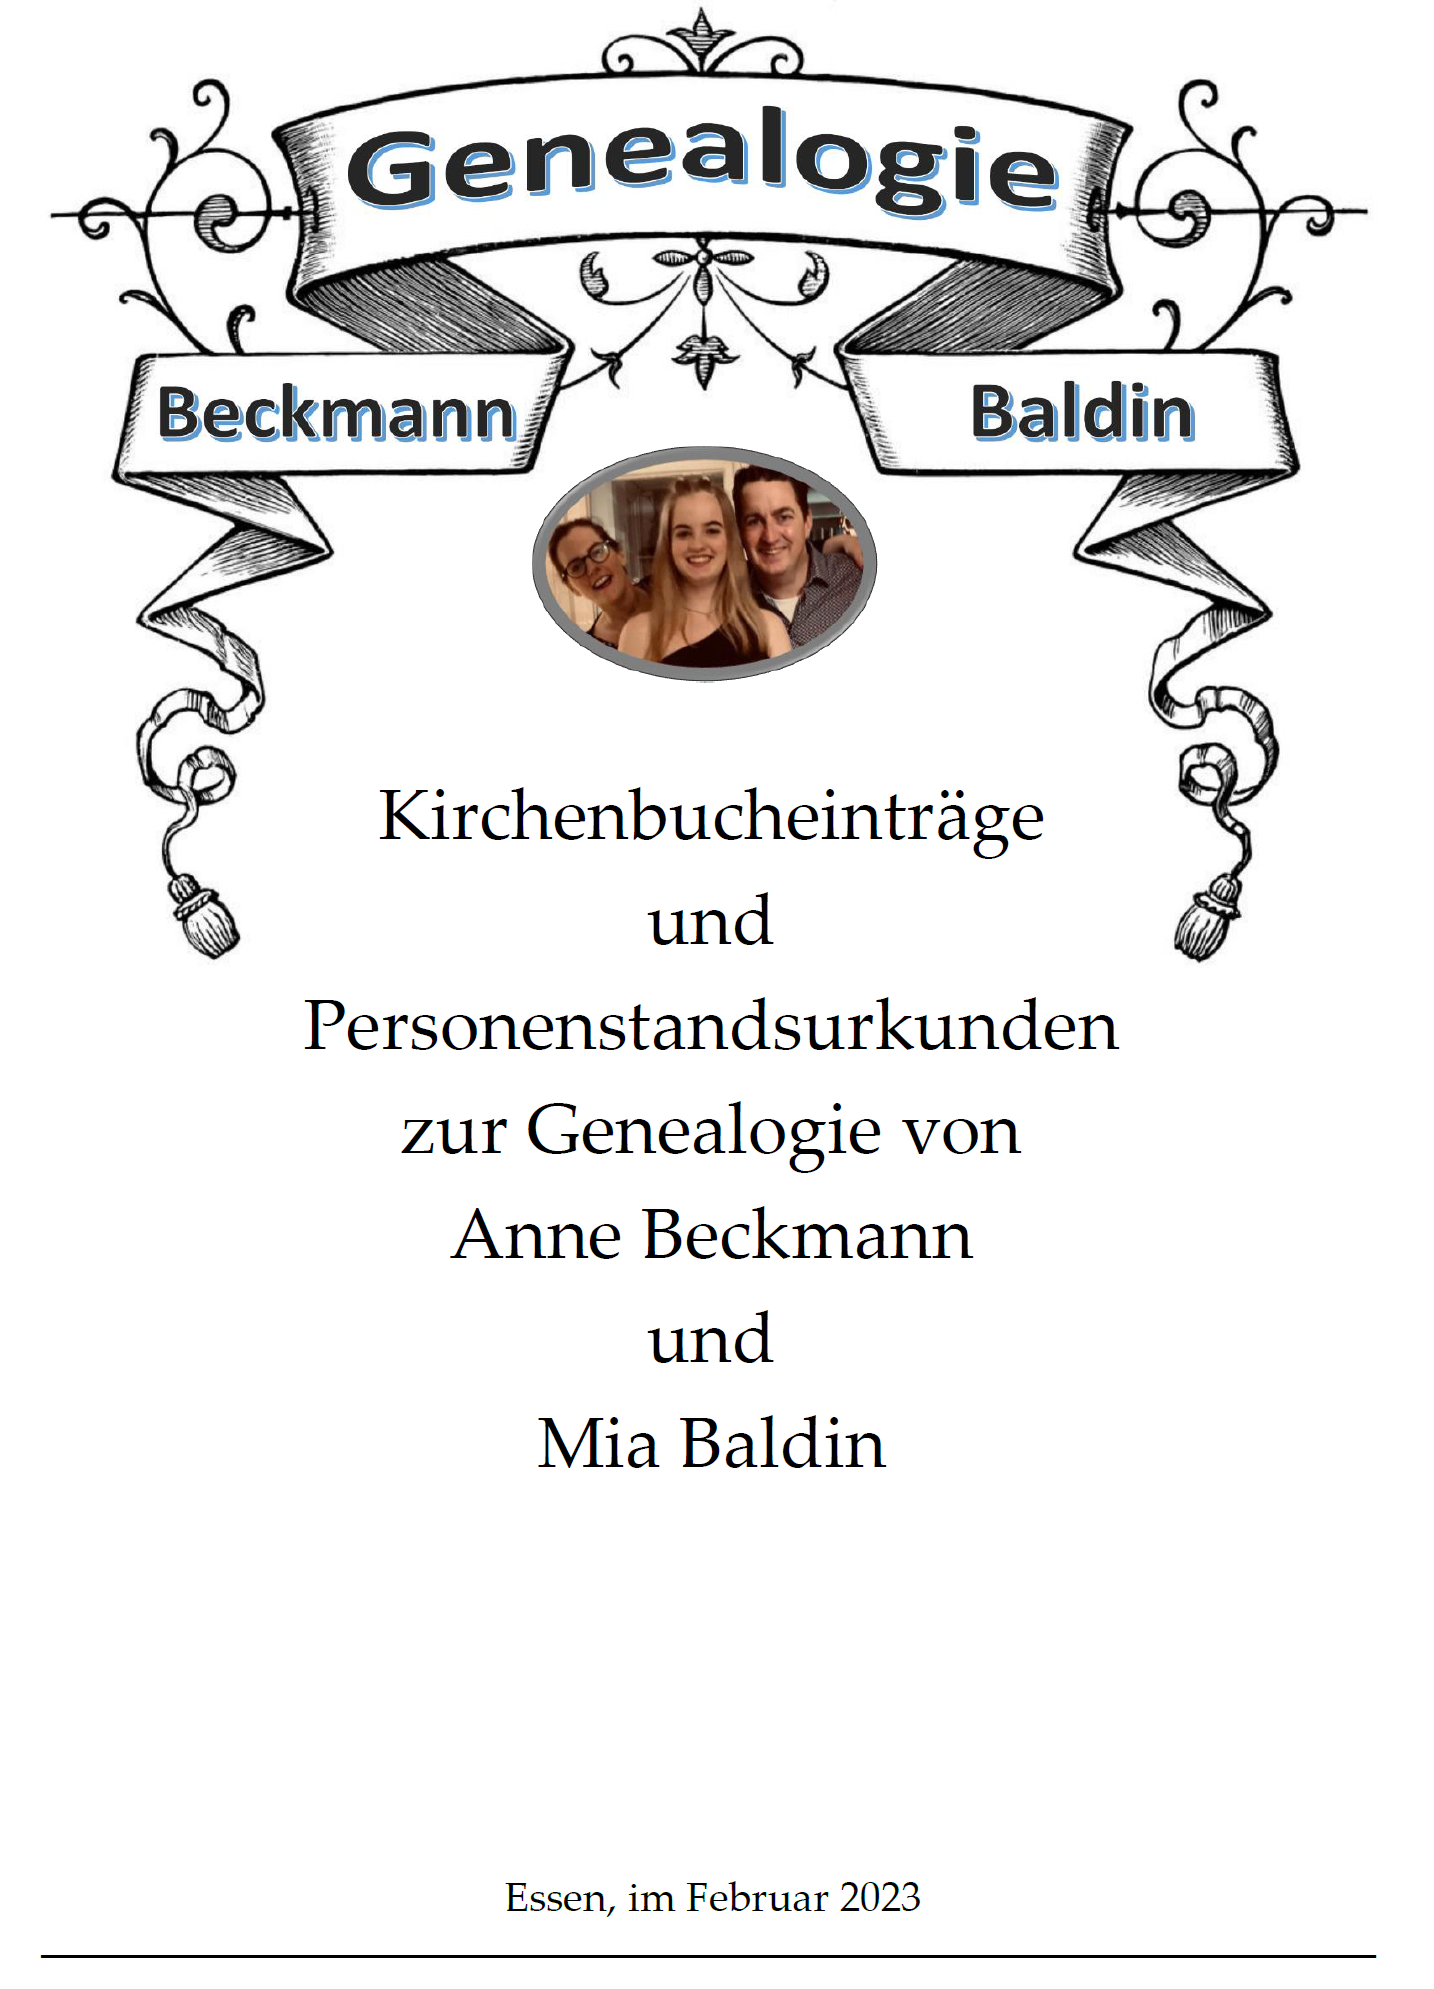 Beckmann, A. & Hungerige, H. (2023). Kirchenbucheinträge und Personenstandsurkunden zur Genealogie von Anne Beckmann